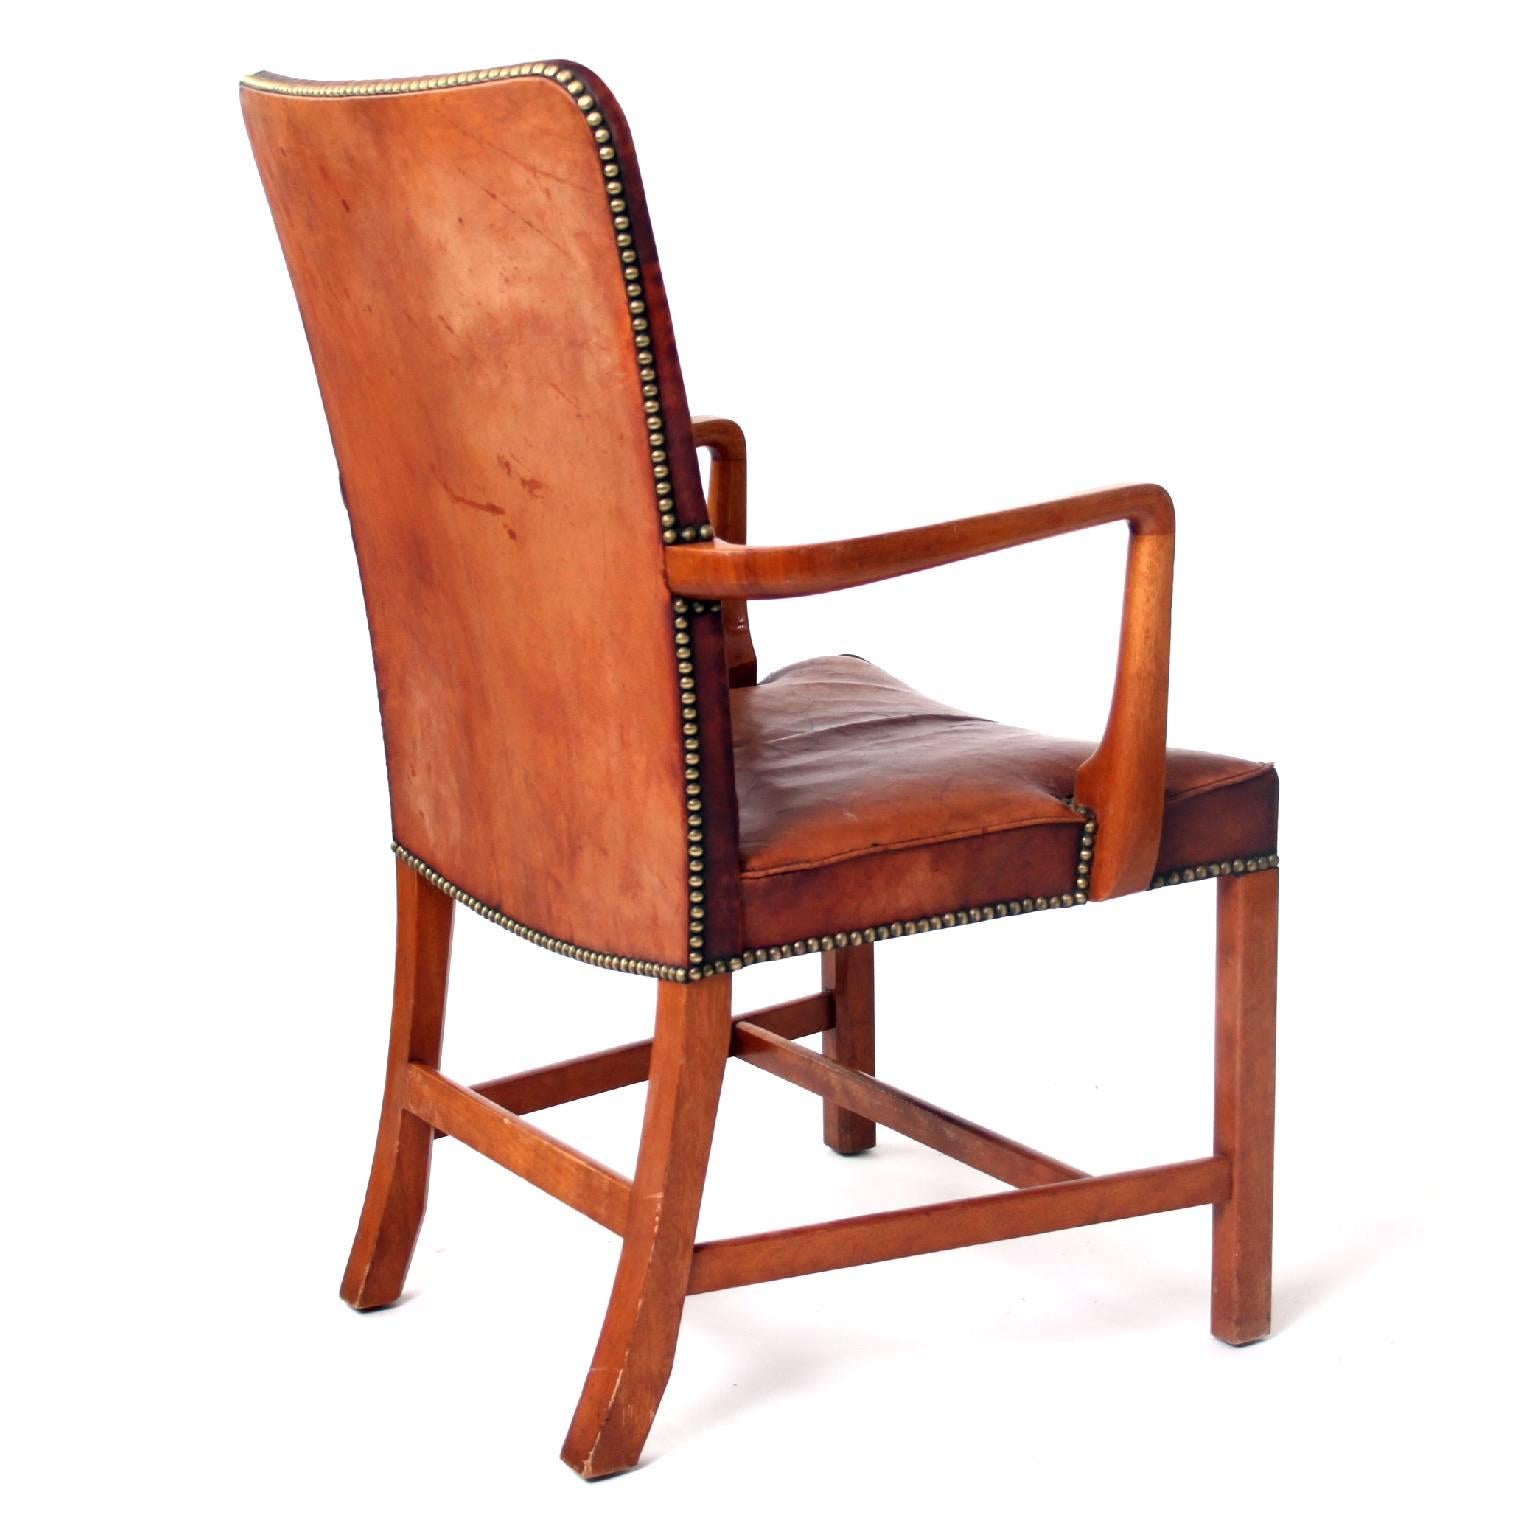 Scandinavian Modern Kaare Klint, High Back Armchair in Original Niger Leather, 1940's. 